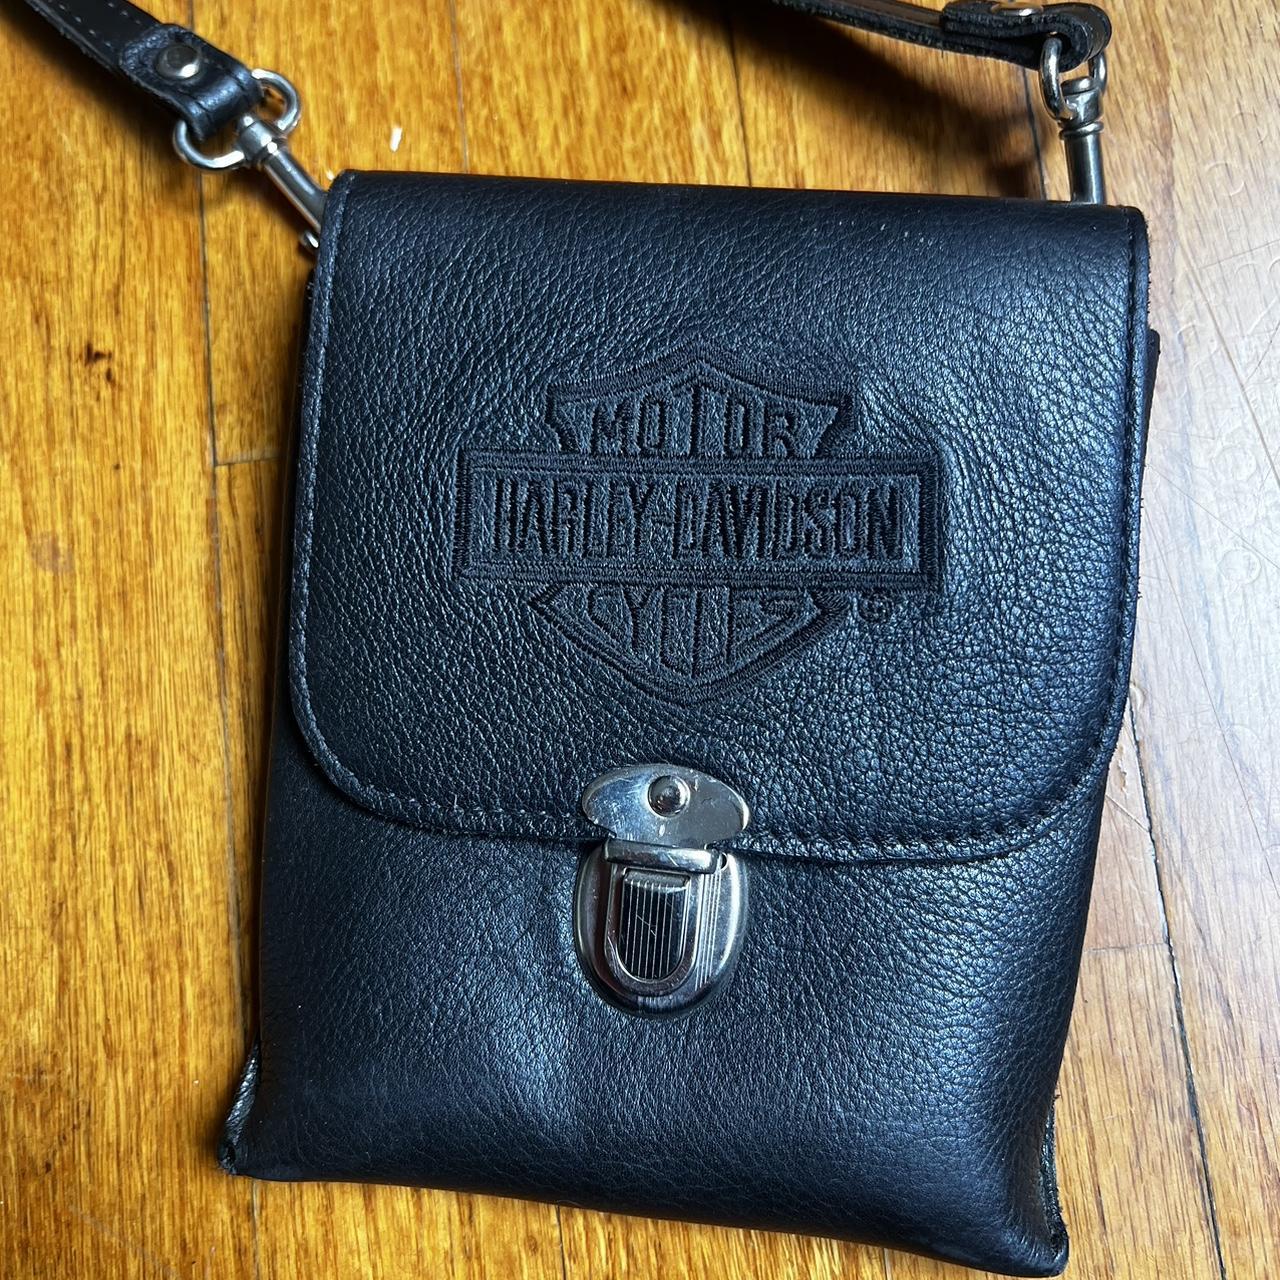 Harley Davidson Hand Bag Vintage Black Leather Bag 